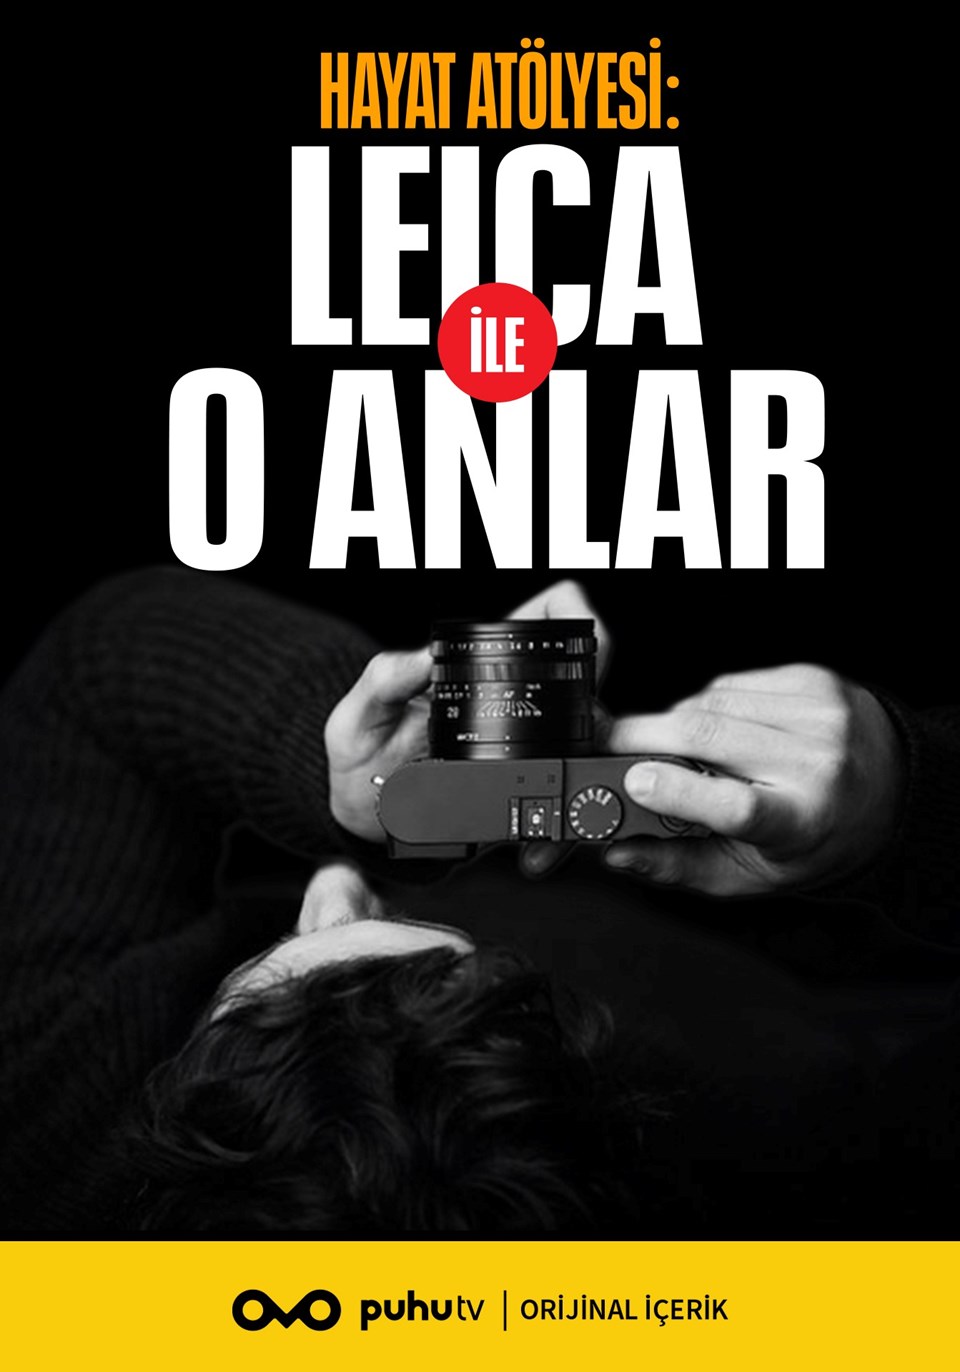 Hatay Atölyesi: Leica ile O Anlar puhutv'de - 1